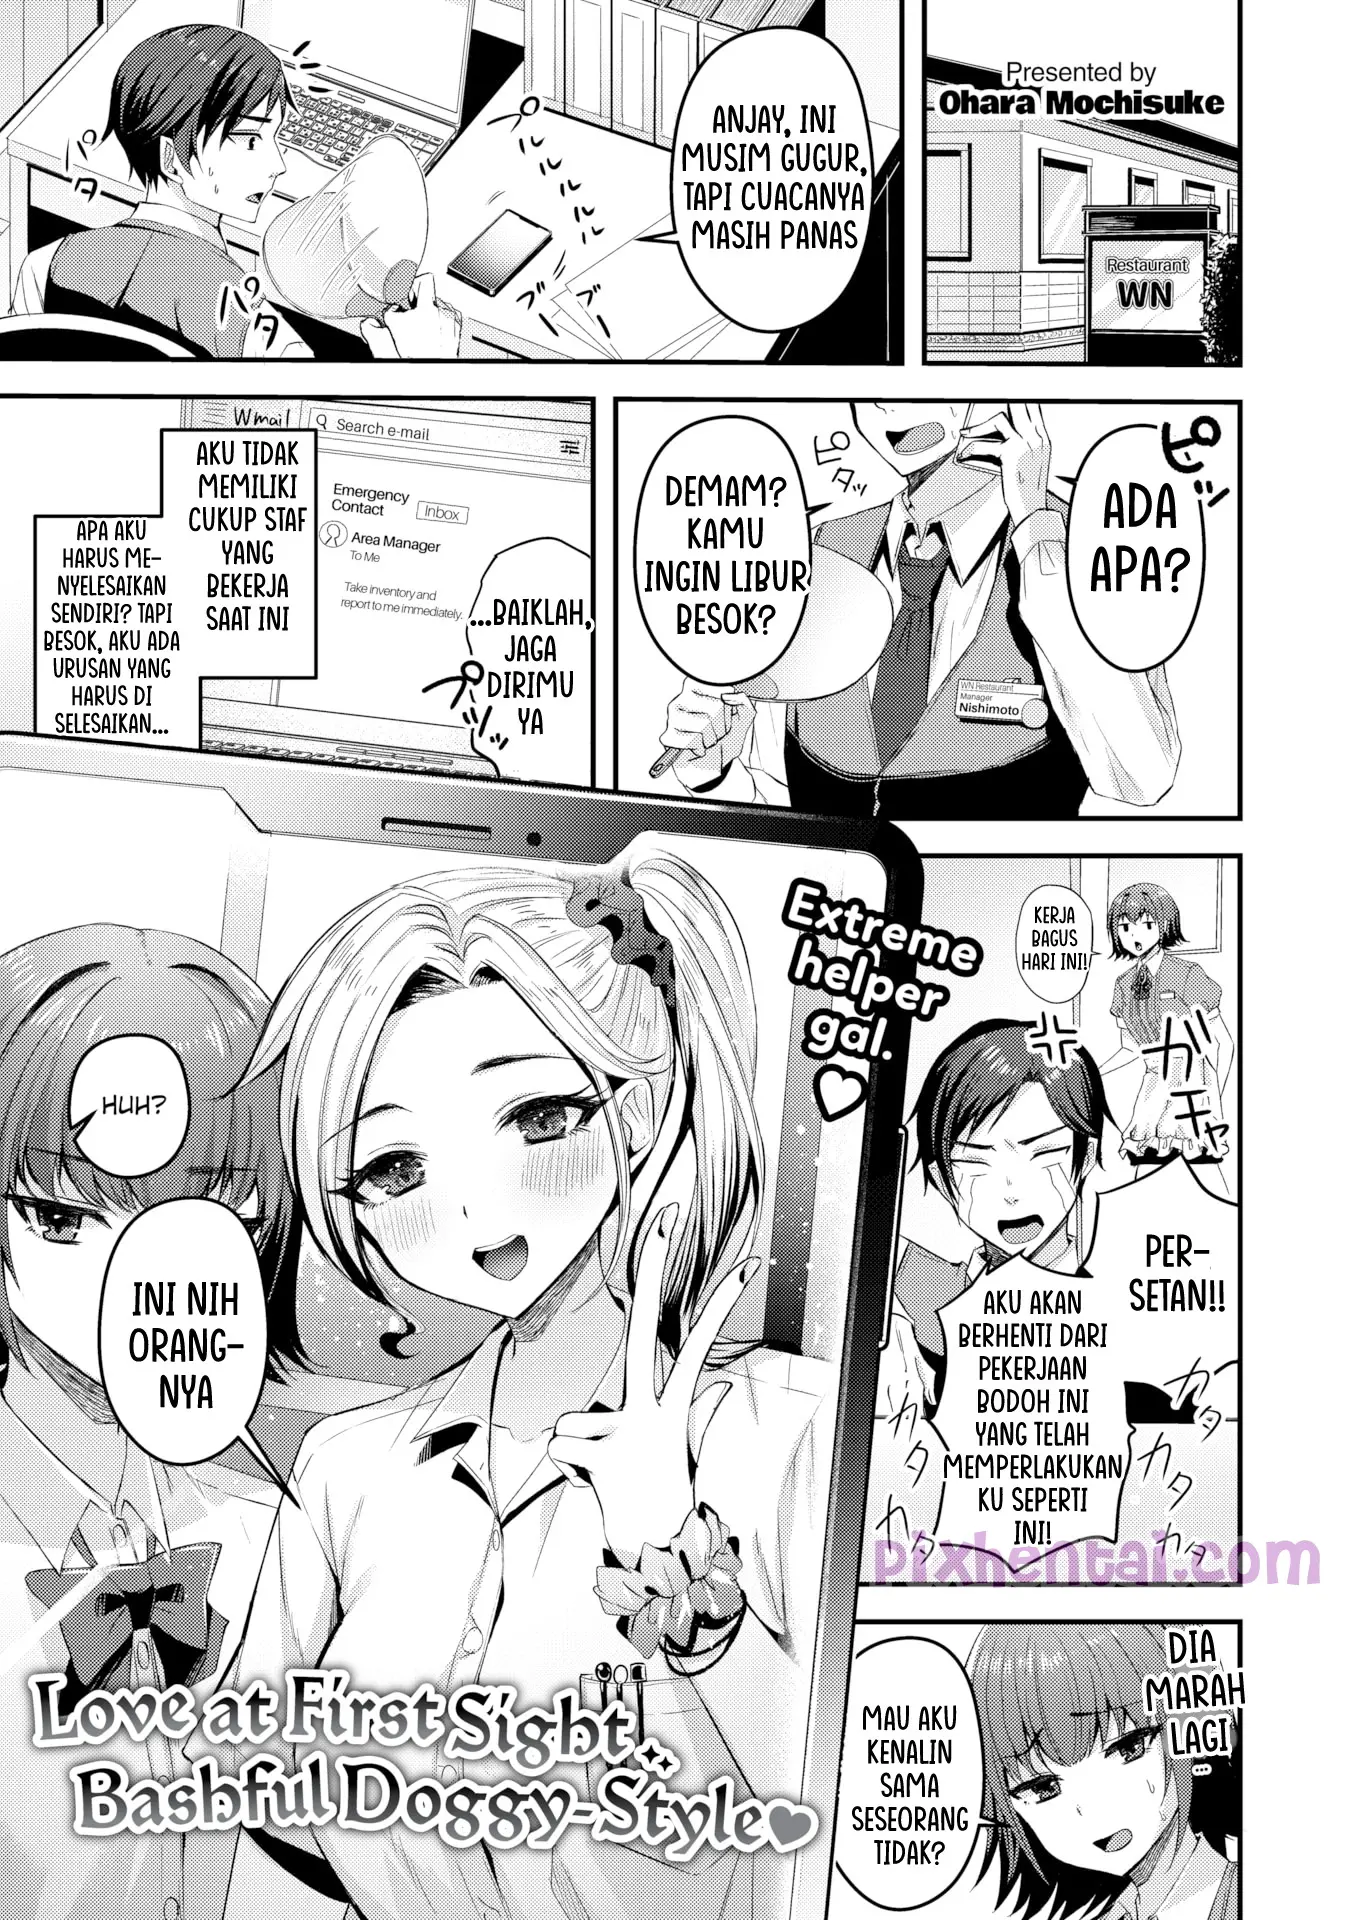 Komik hentai xxx manga sex bokep Love at First Sight Bashful Doggy Style 1